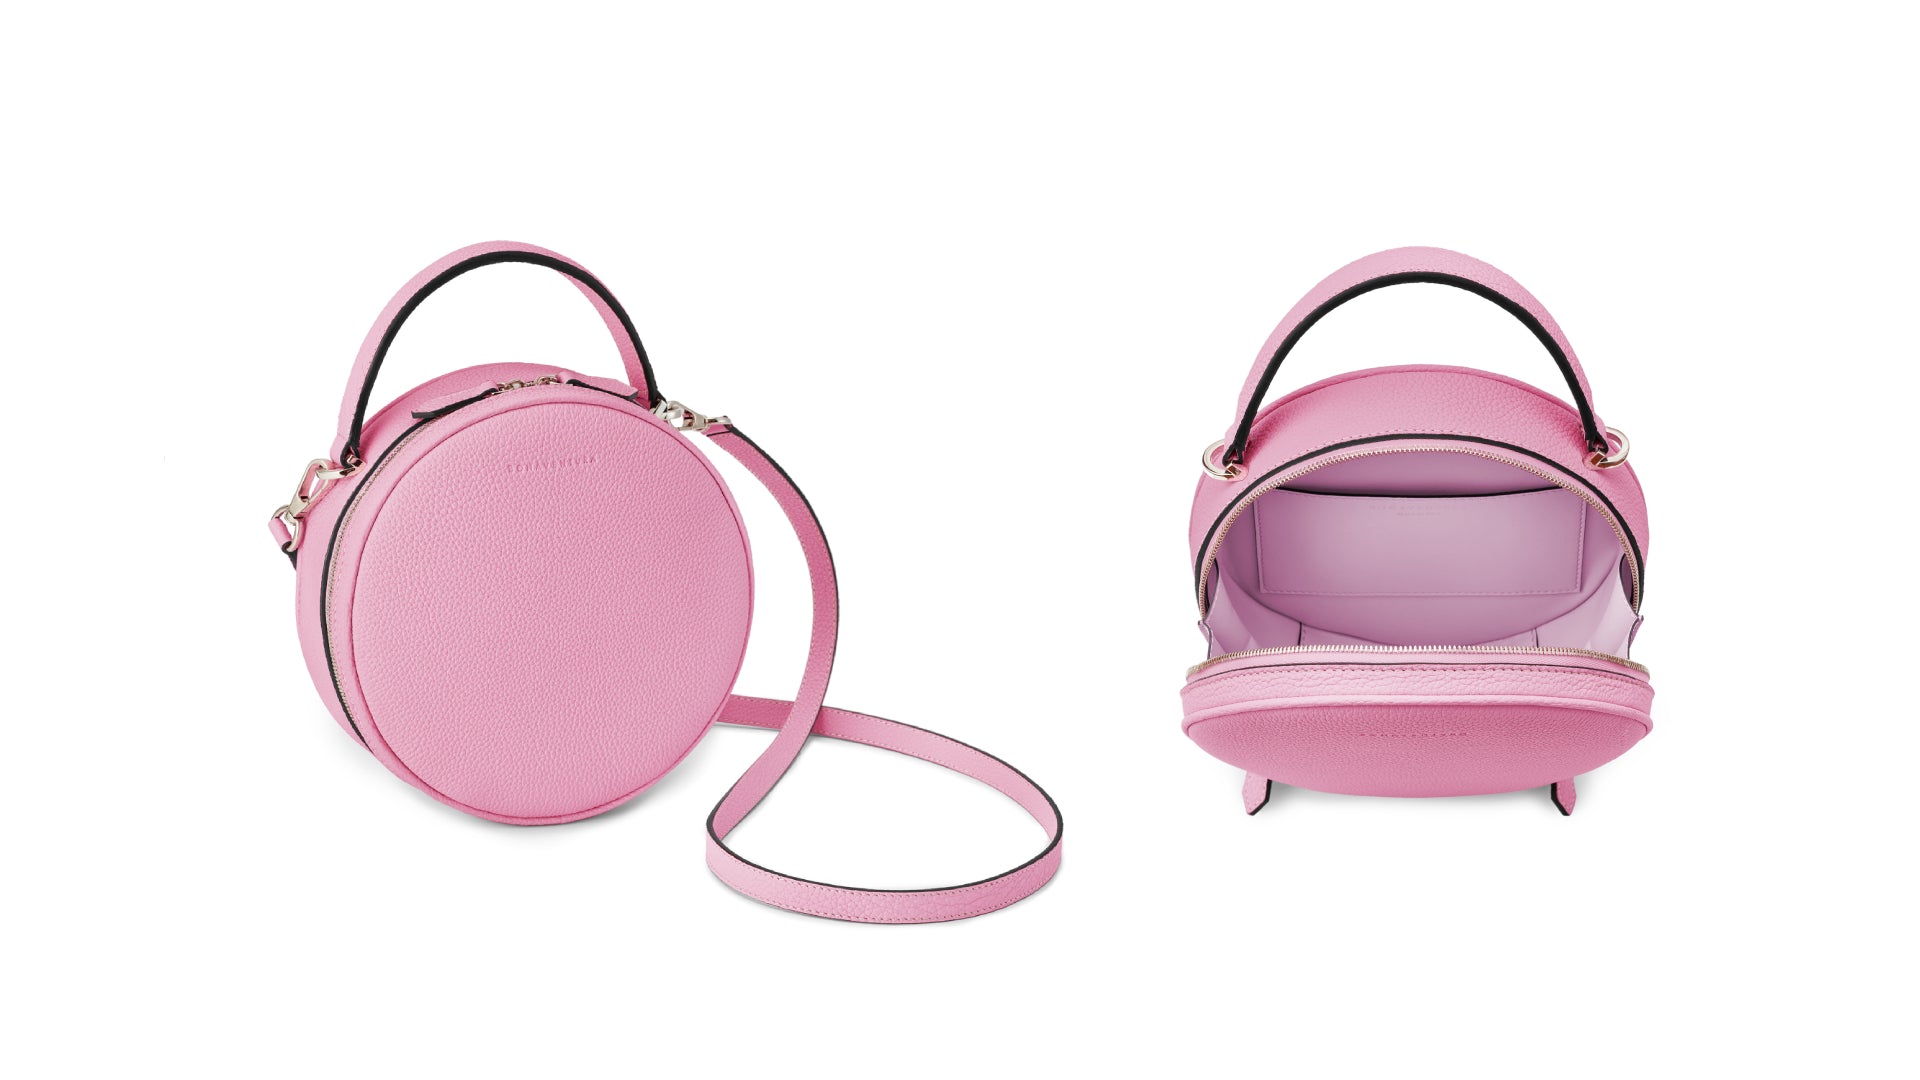 Luna Handbag in Taffy Pink